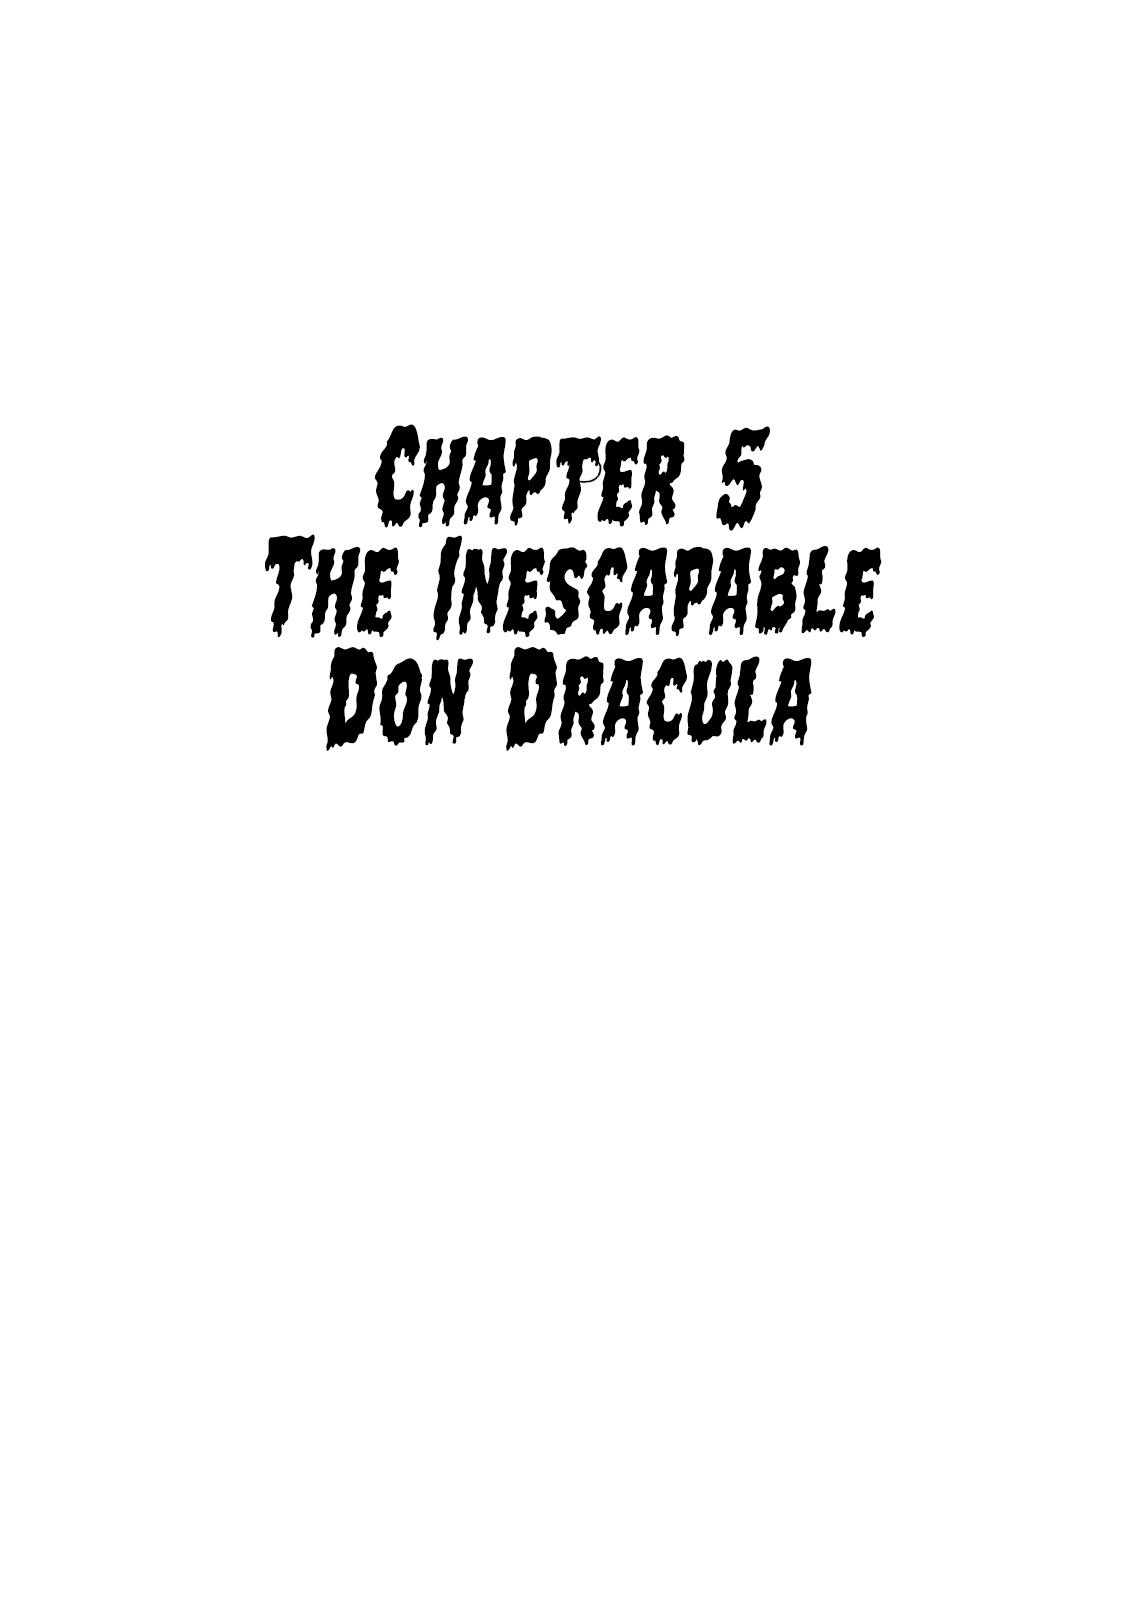 Don Dracula - Page 1